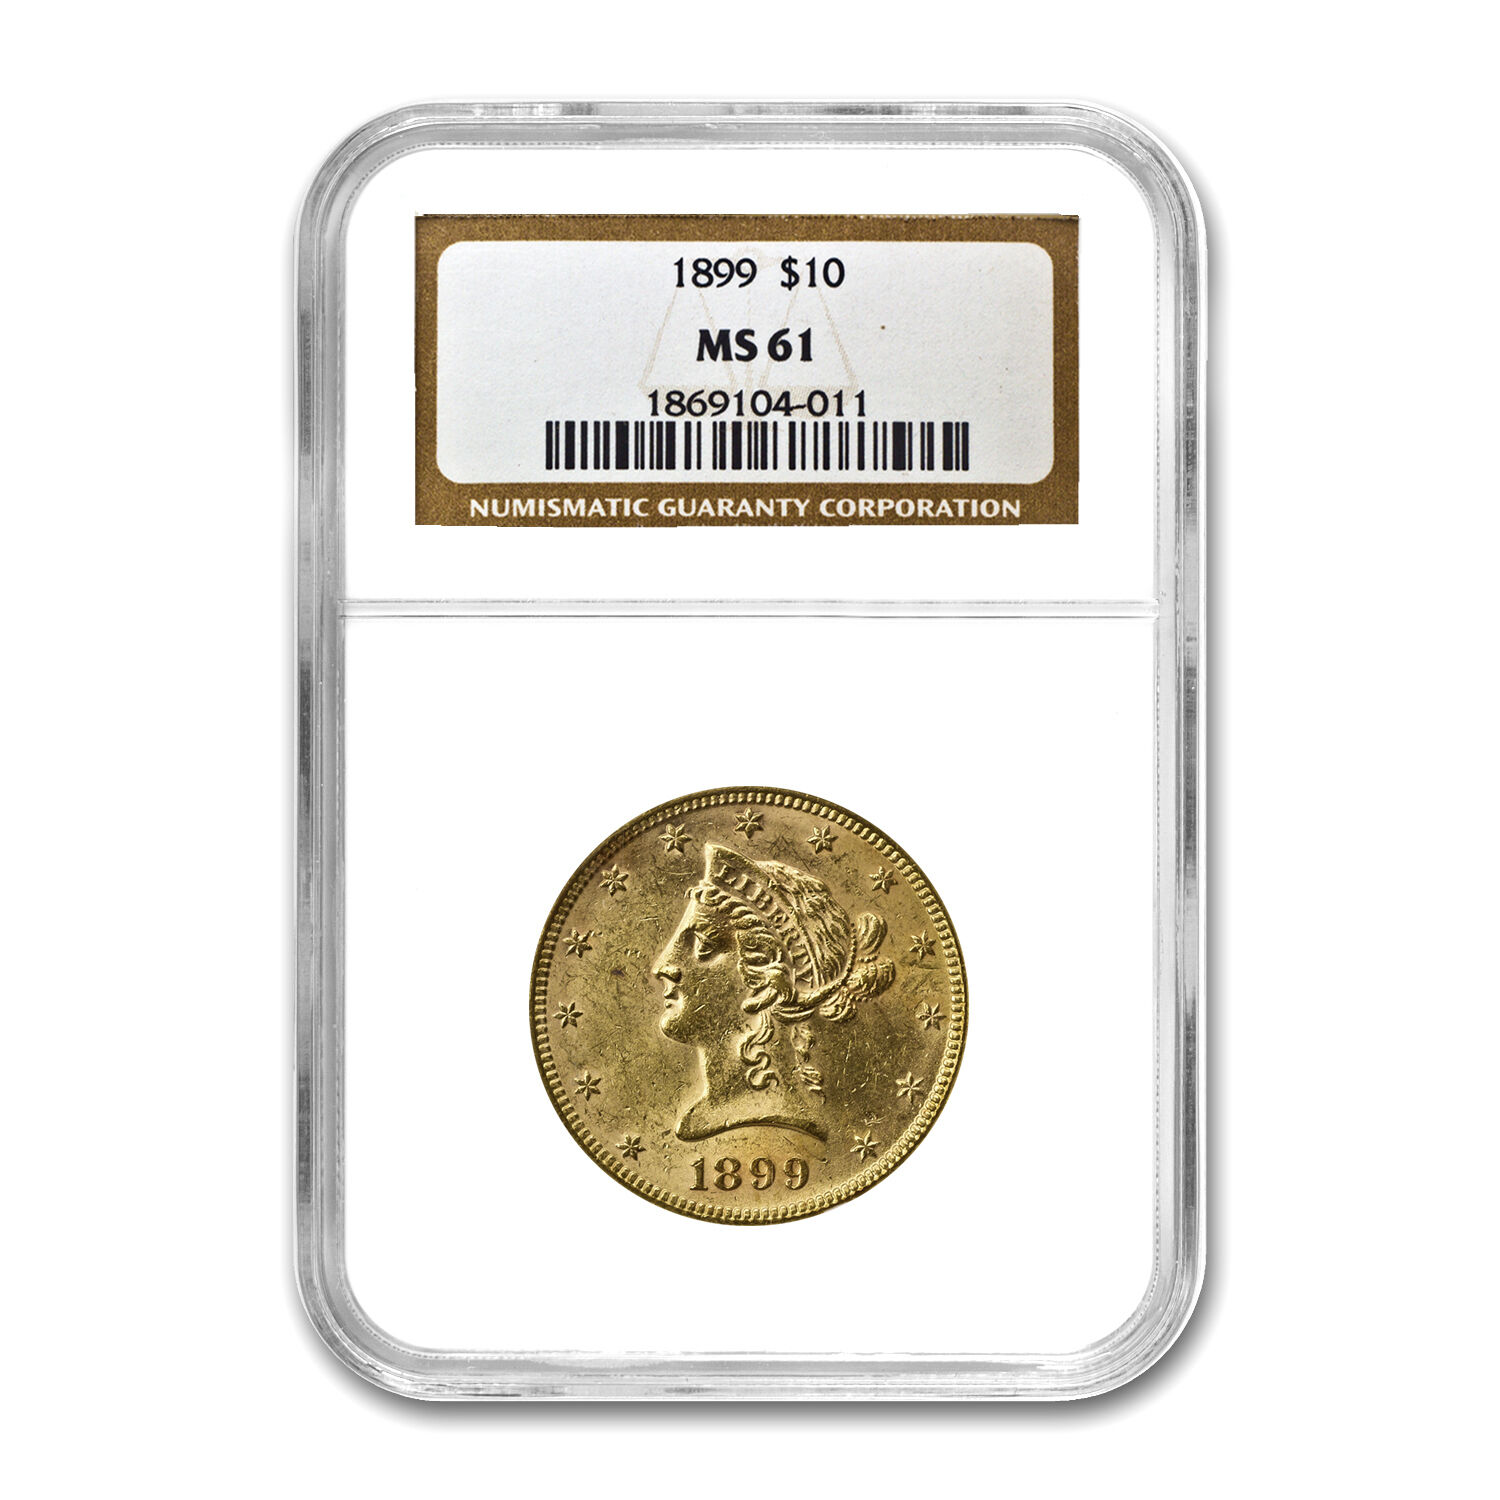 $10 Liberty Gold Eagle Coin - Random Year - MS-61 NGC - SKU #23197